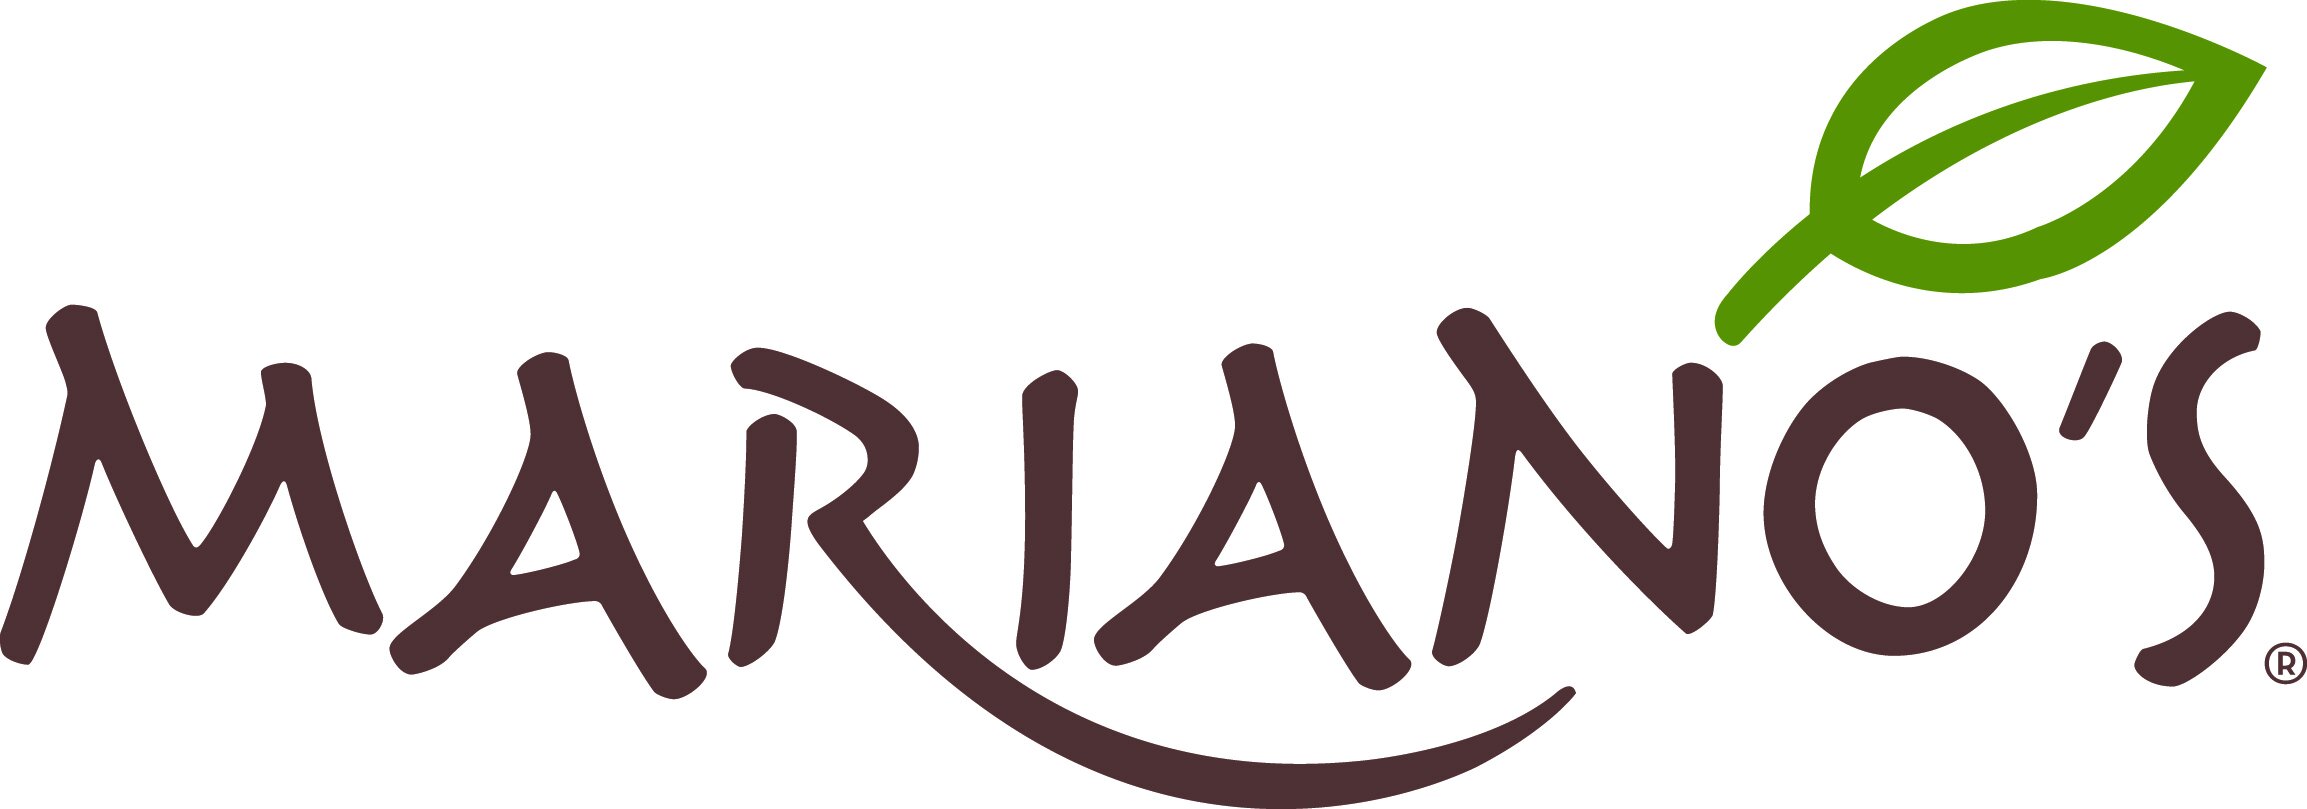 Mariano's Logo_4C.jpg